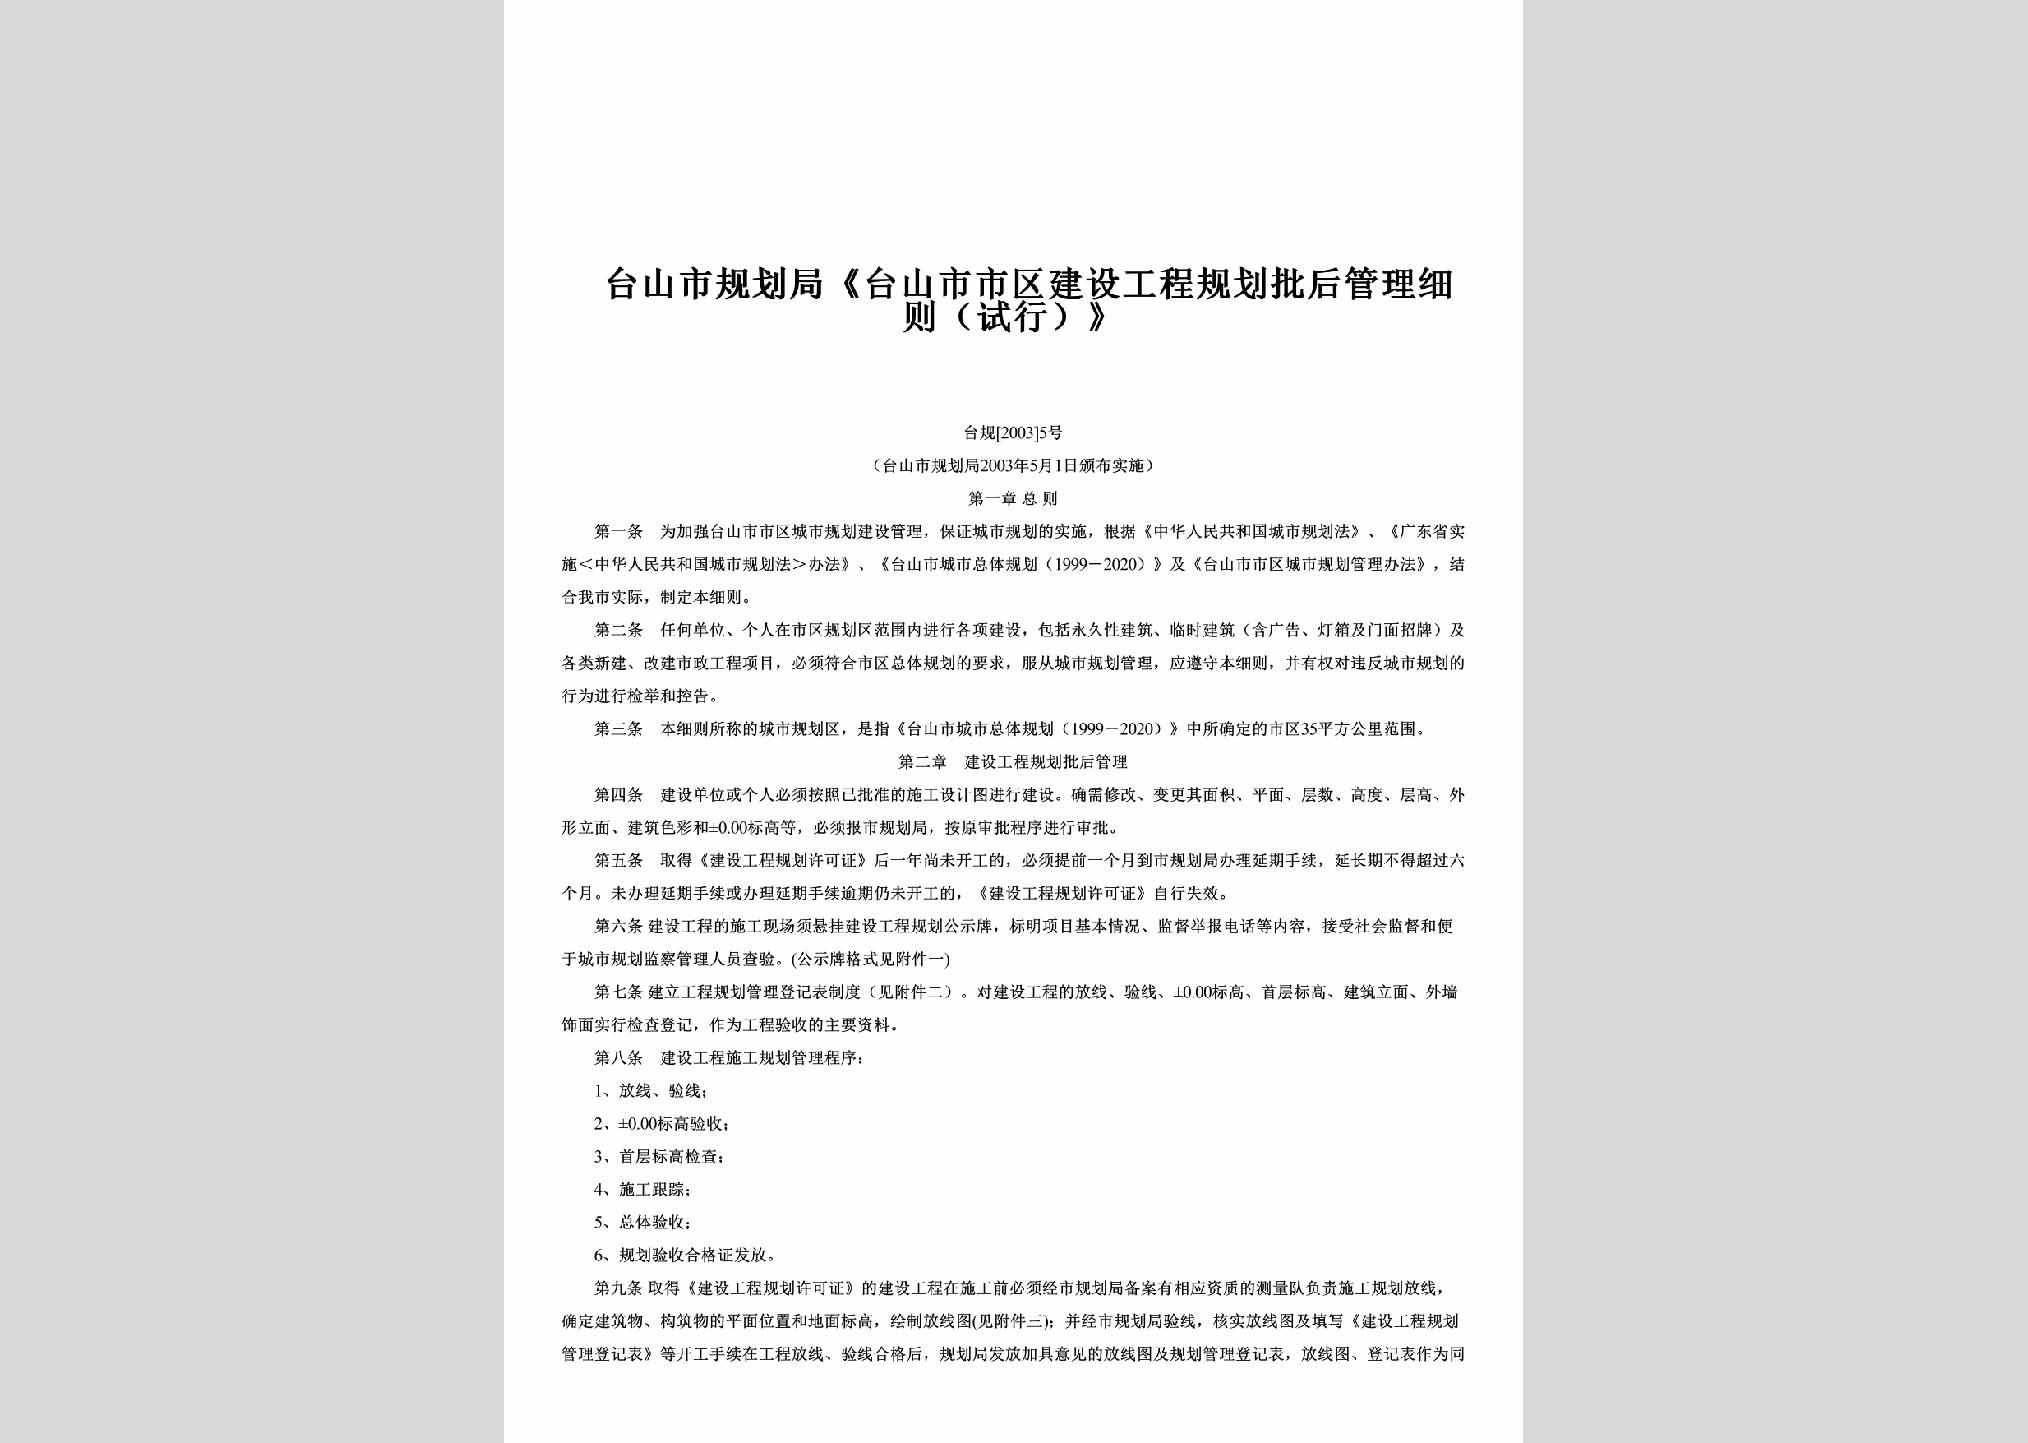 台规[2003]5号：《台山市市区建设工程规划批后管理细则（试行）》